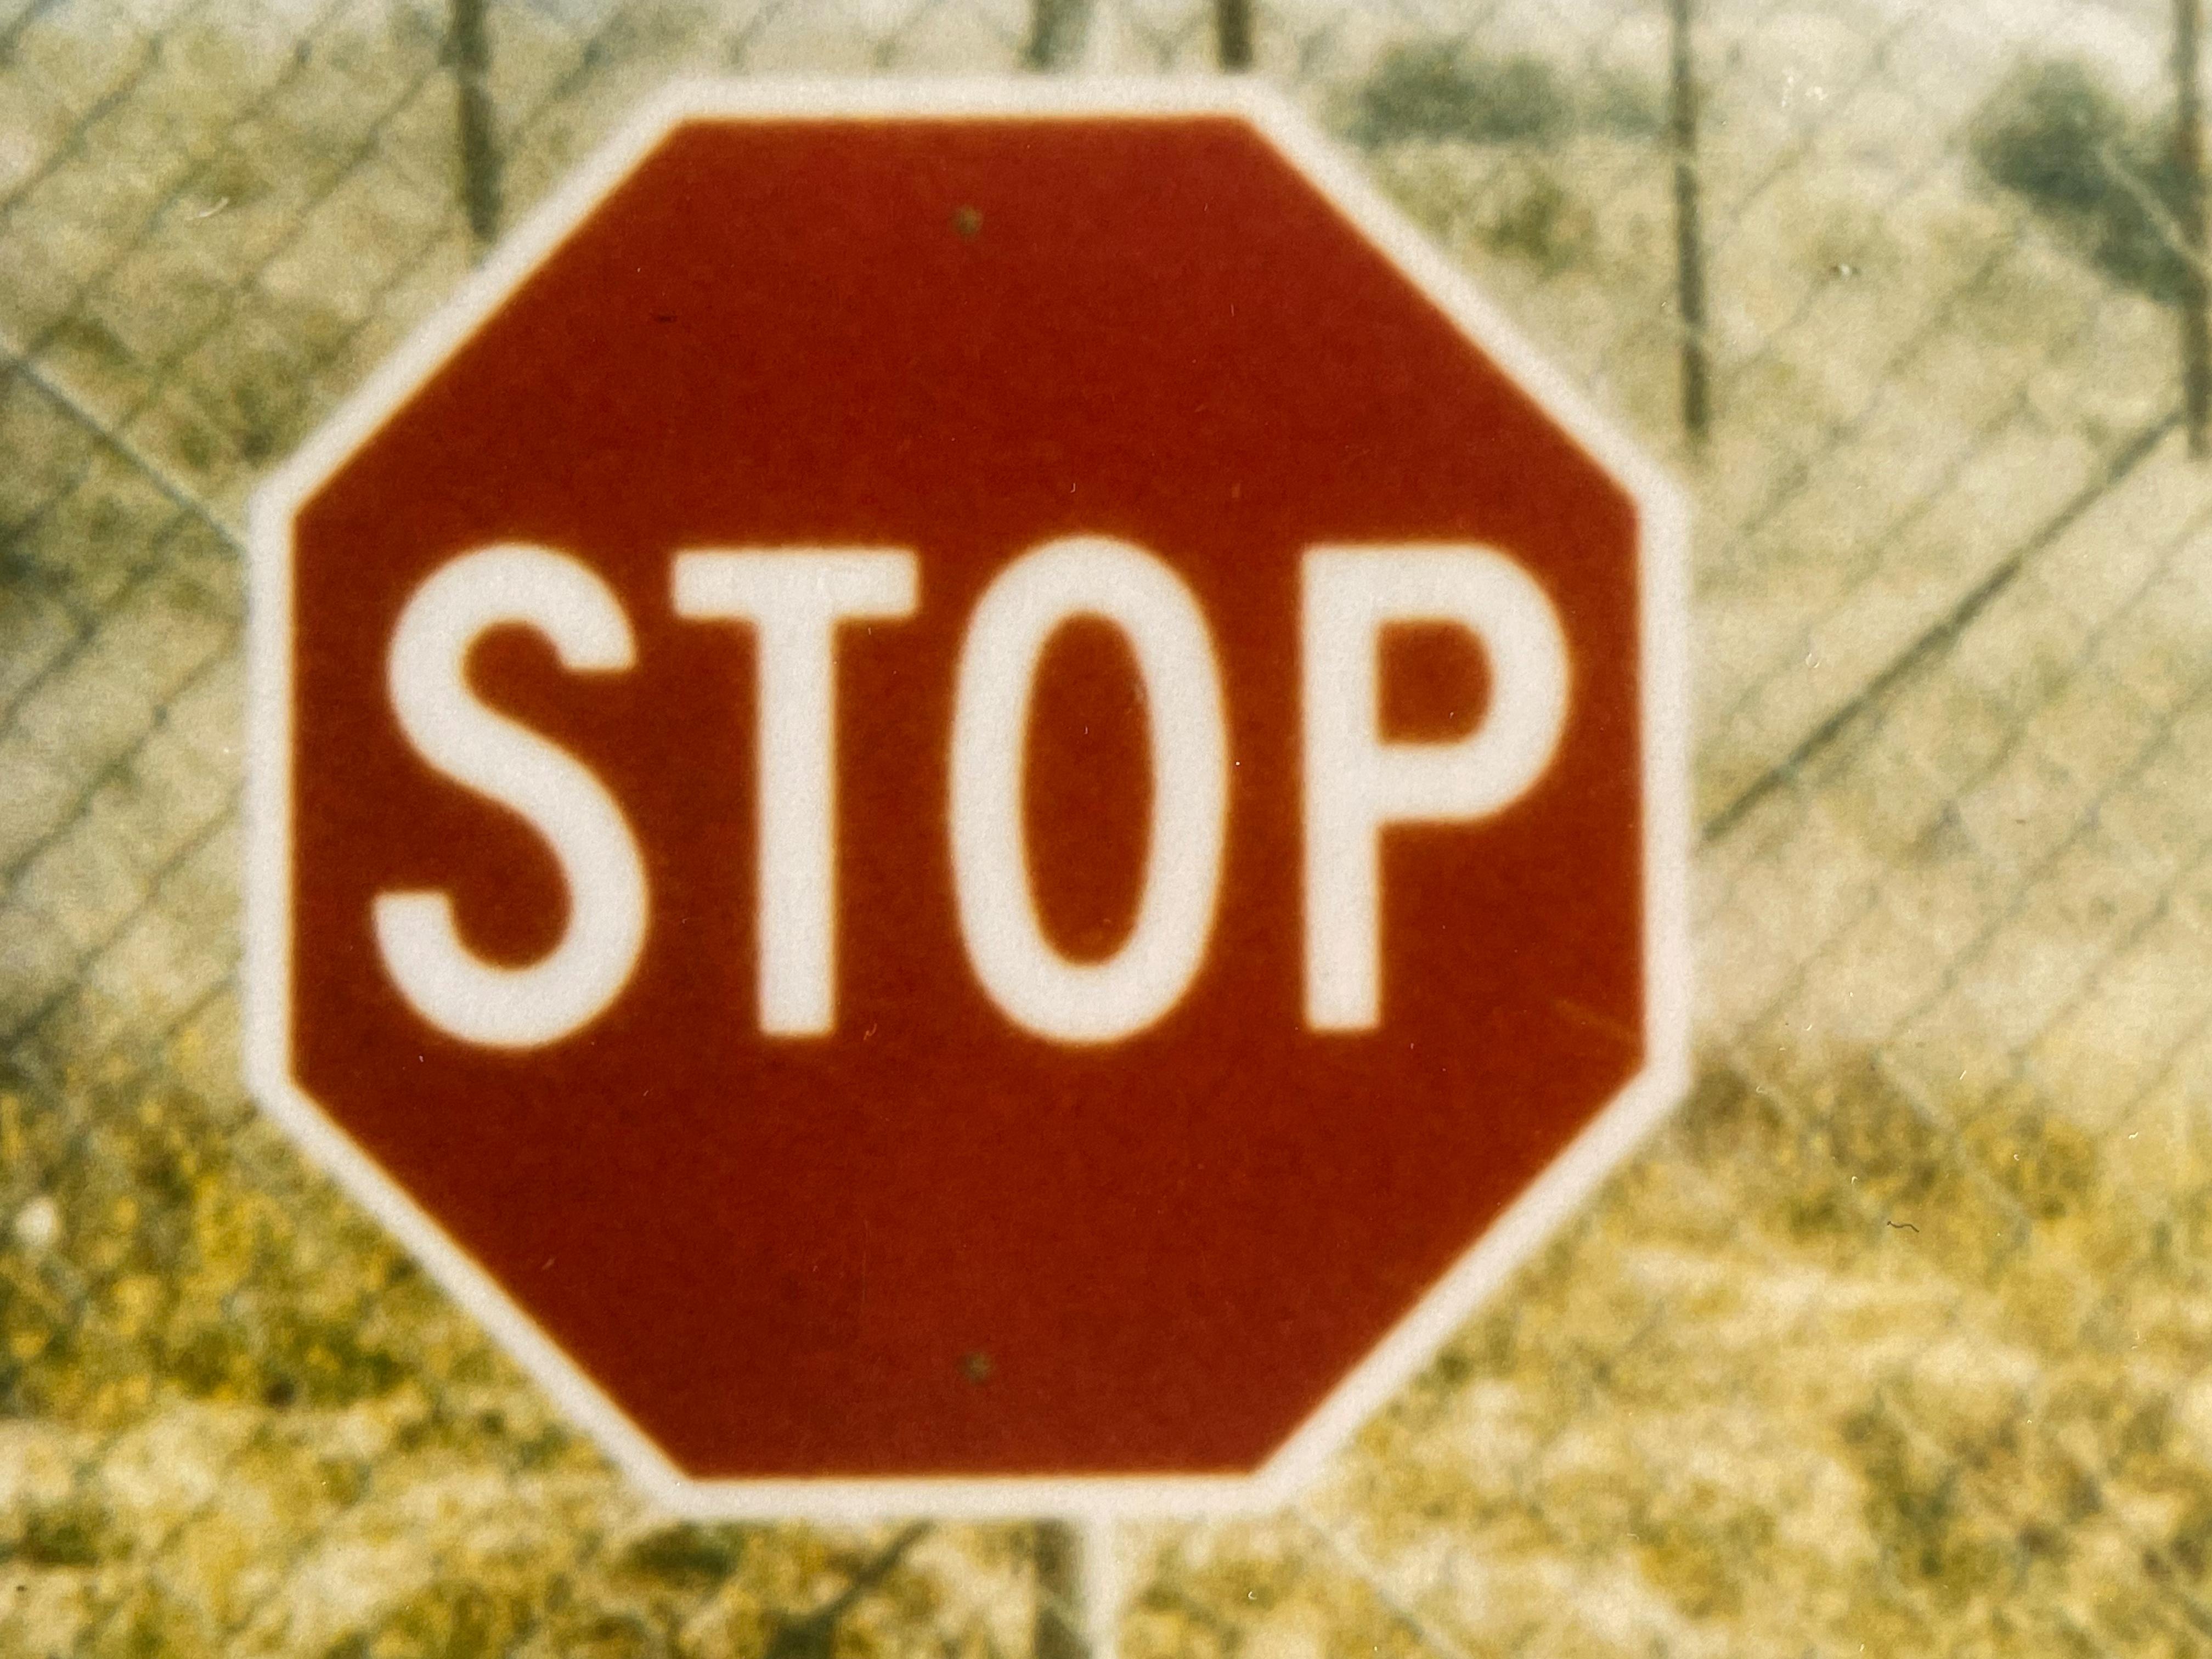 Stop (Drive to the Desert) - 1999

44x59cm, 
Édition de 5 exemplaires plus 2 épreuves d'artiste. 
A.I.C.C., imprimé à la main par l'artiste, d'après le polaroïd original. 
Signé au verso avec certificat. 
Inventaire des artistes #225. 
Non monté.